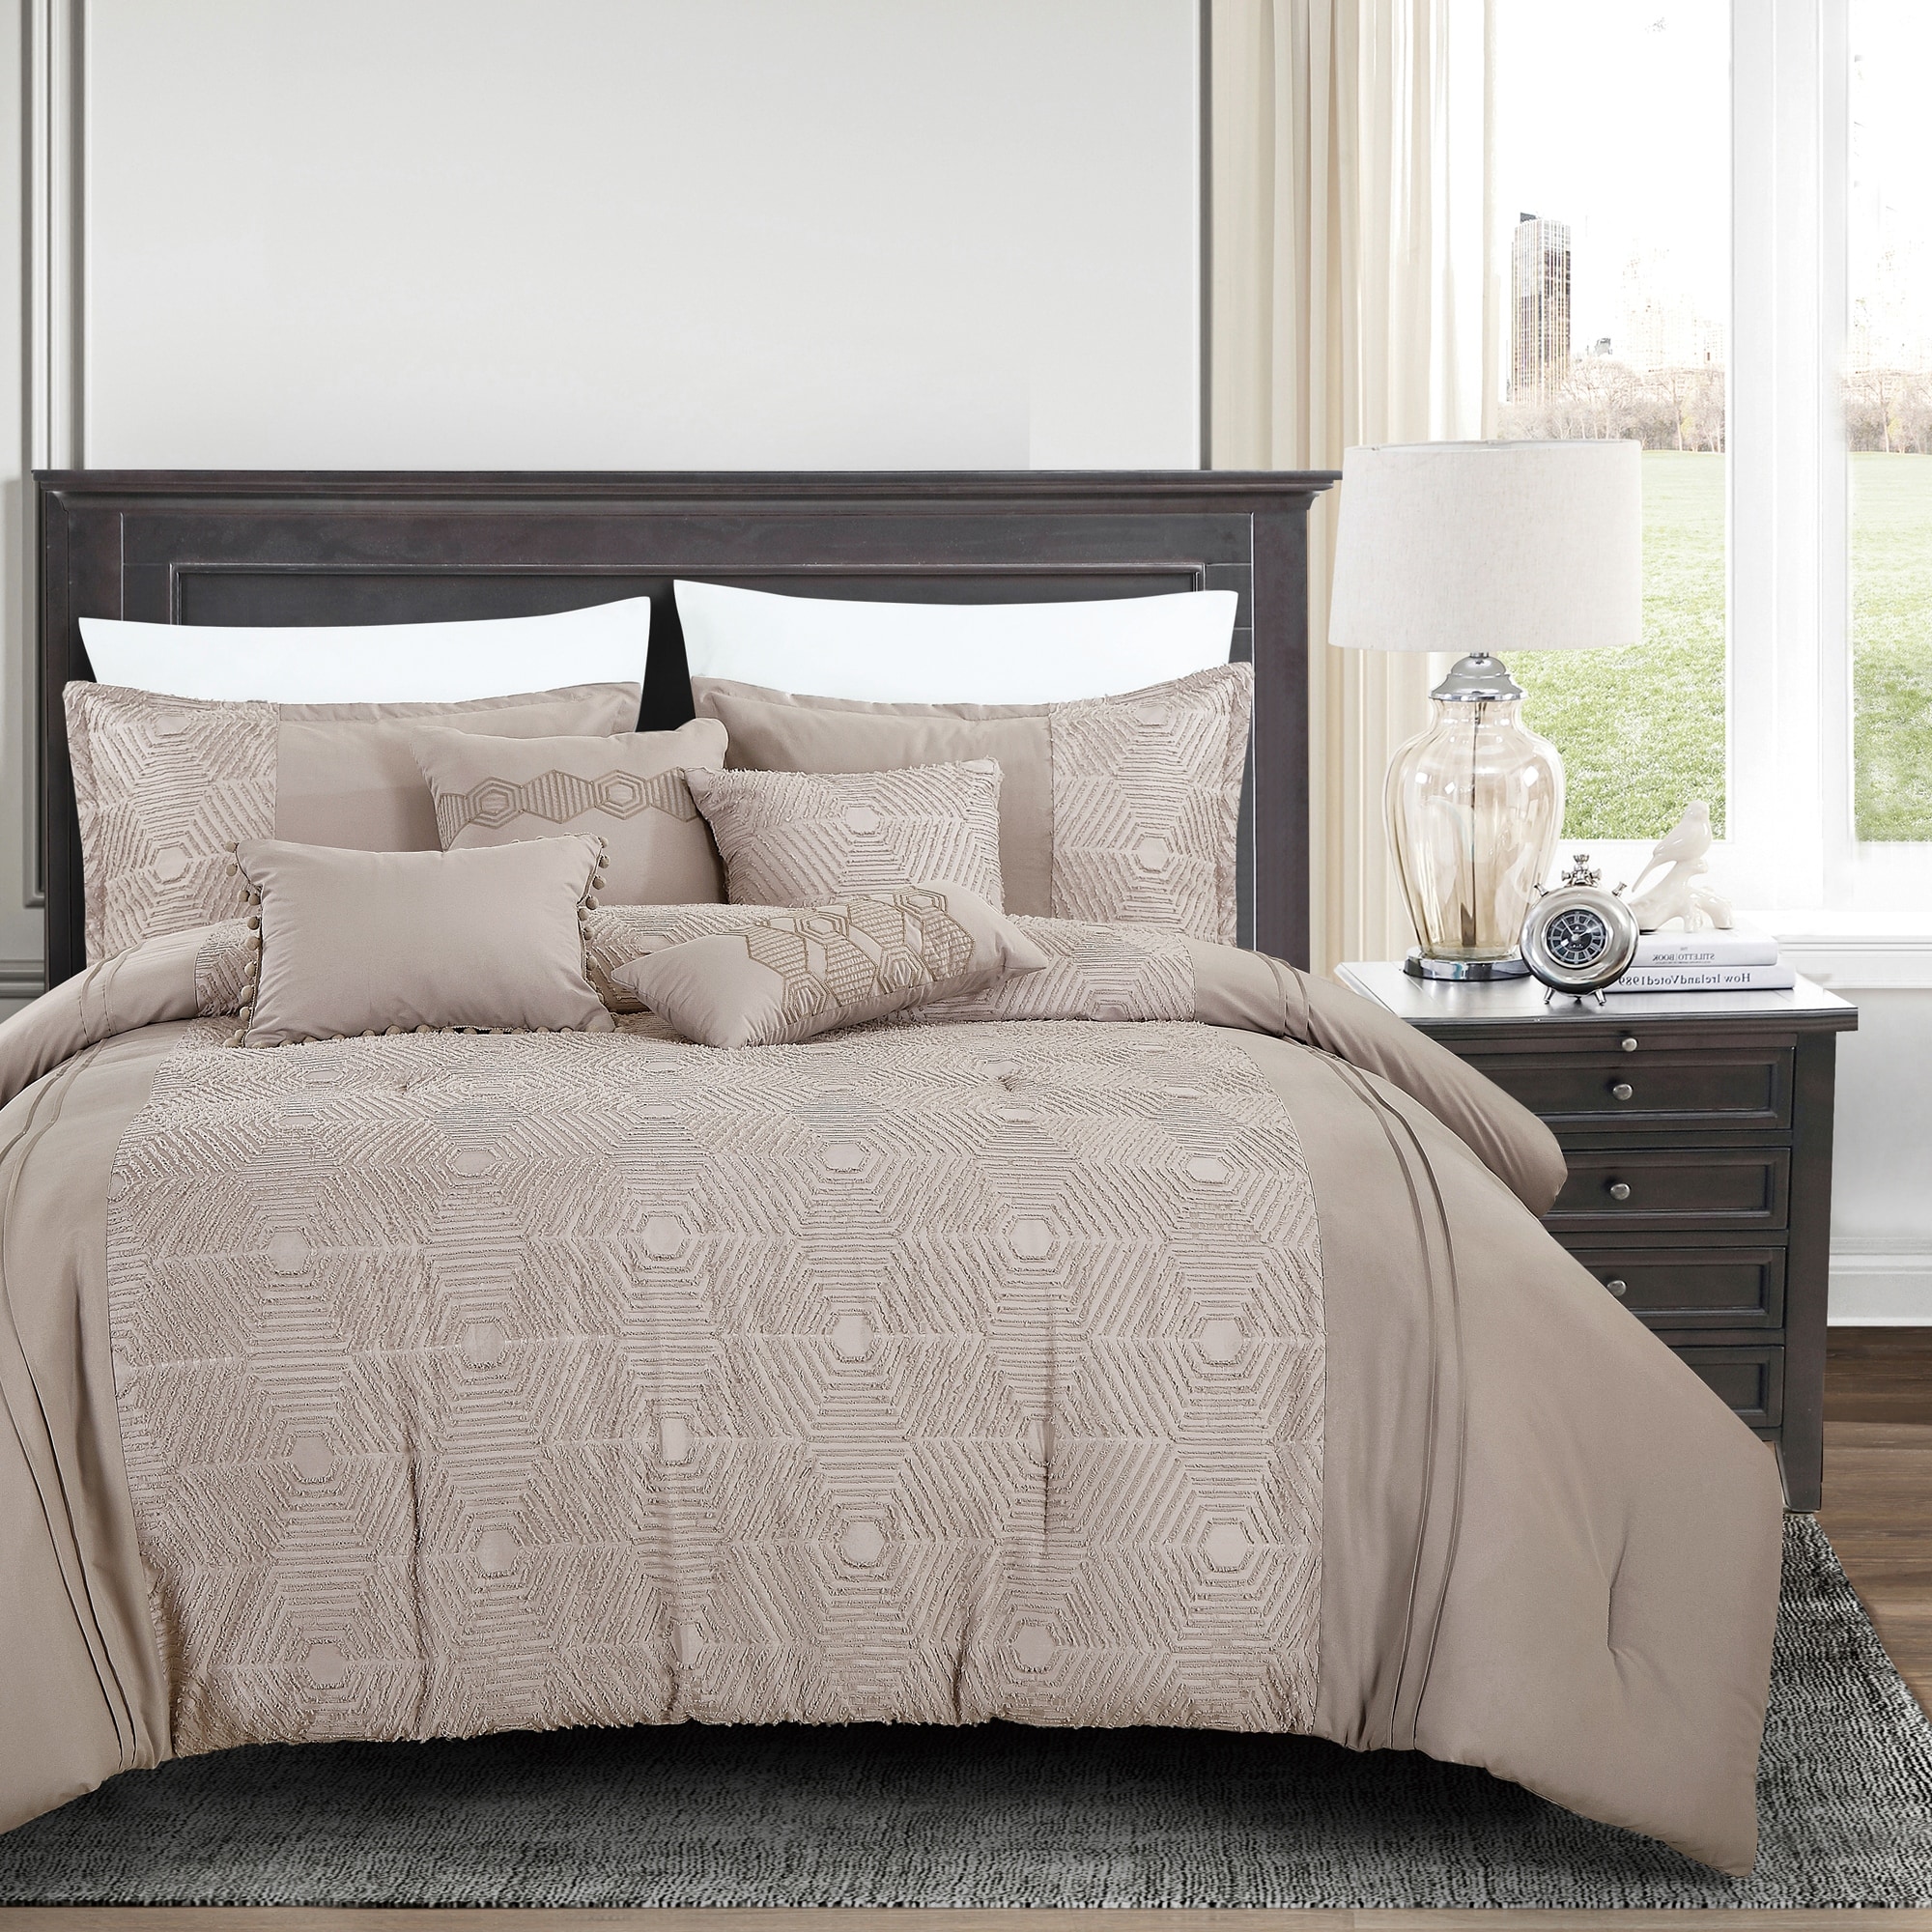 Shatex 7 Piece King Luxury Microfiber Dark Gray Oversized Bedroom Comforter Sets